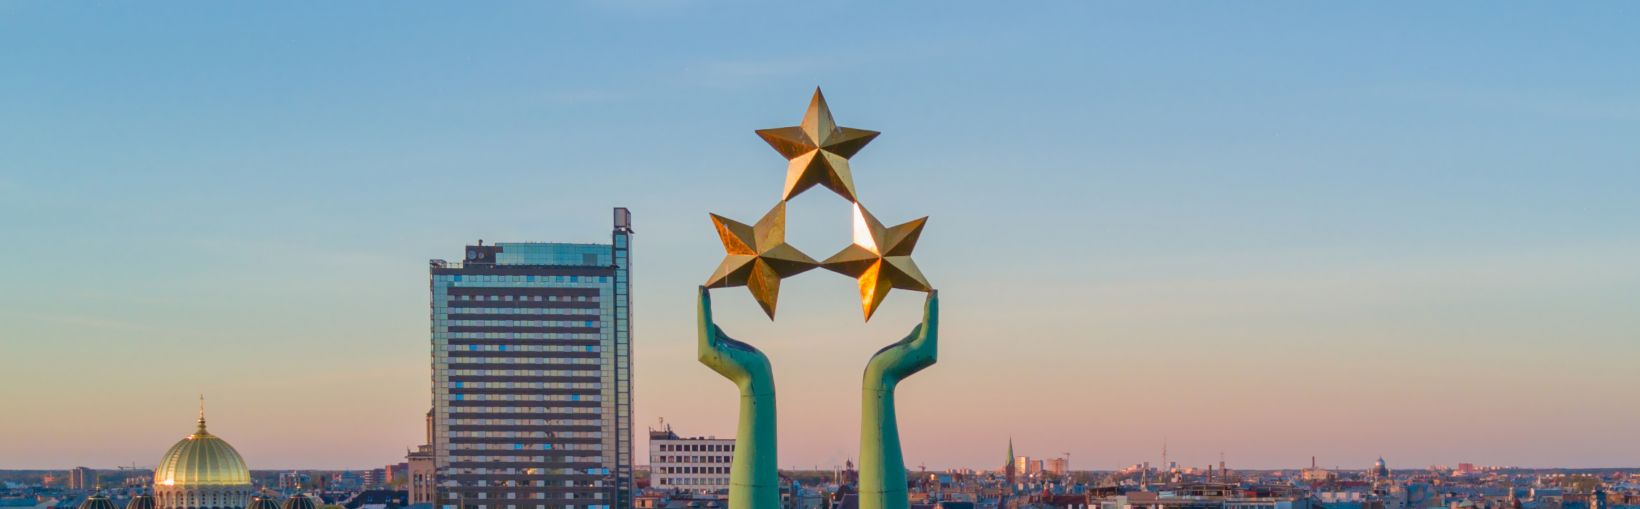 Hermosa vista del atardecer en Riga por la estatua de la libertad - Milda. Libertad en Letonia. Estatua de la libertad sosteniendo tres estrellas sobre la ciudad.